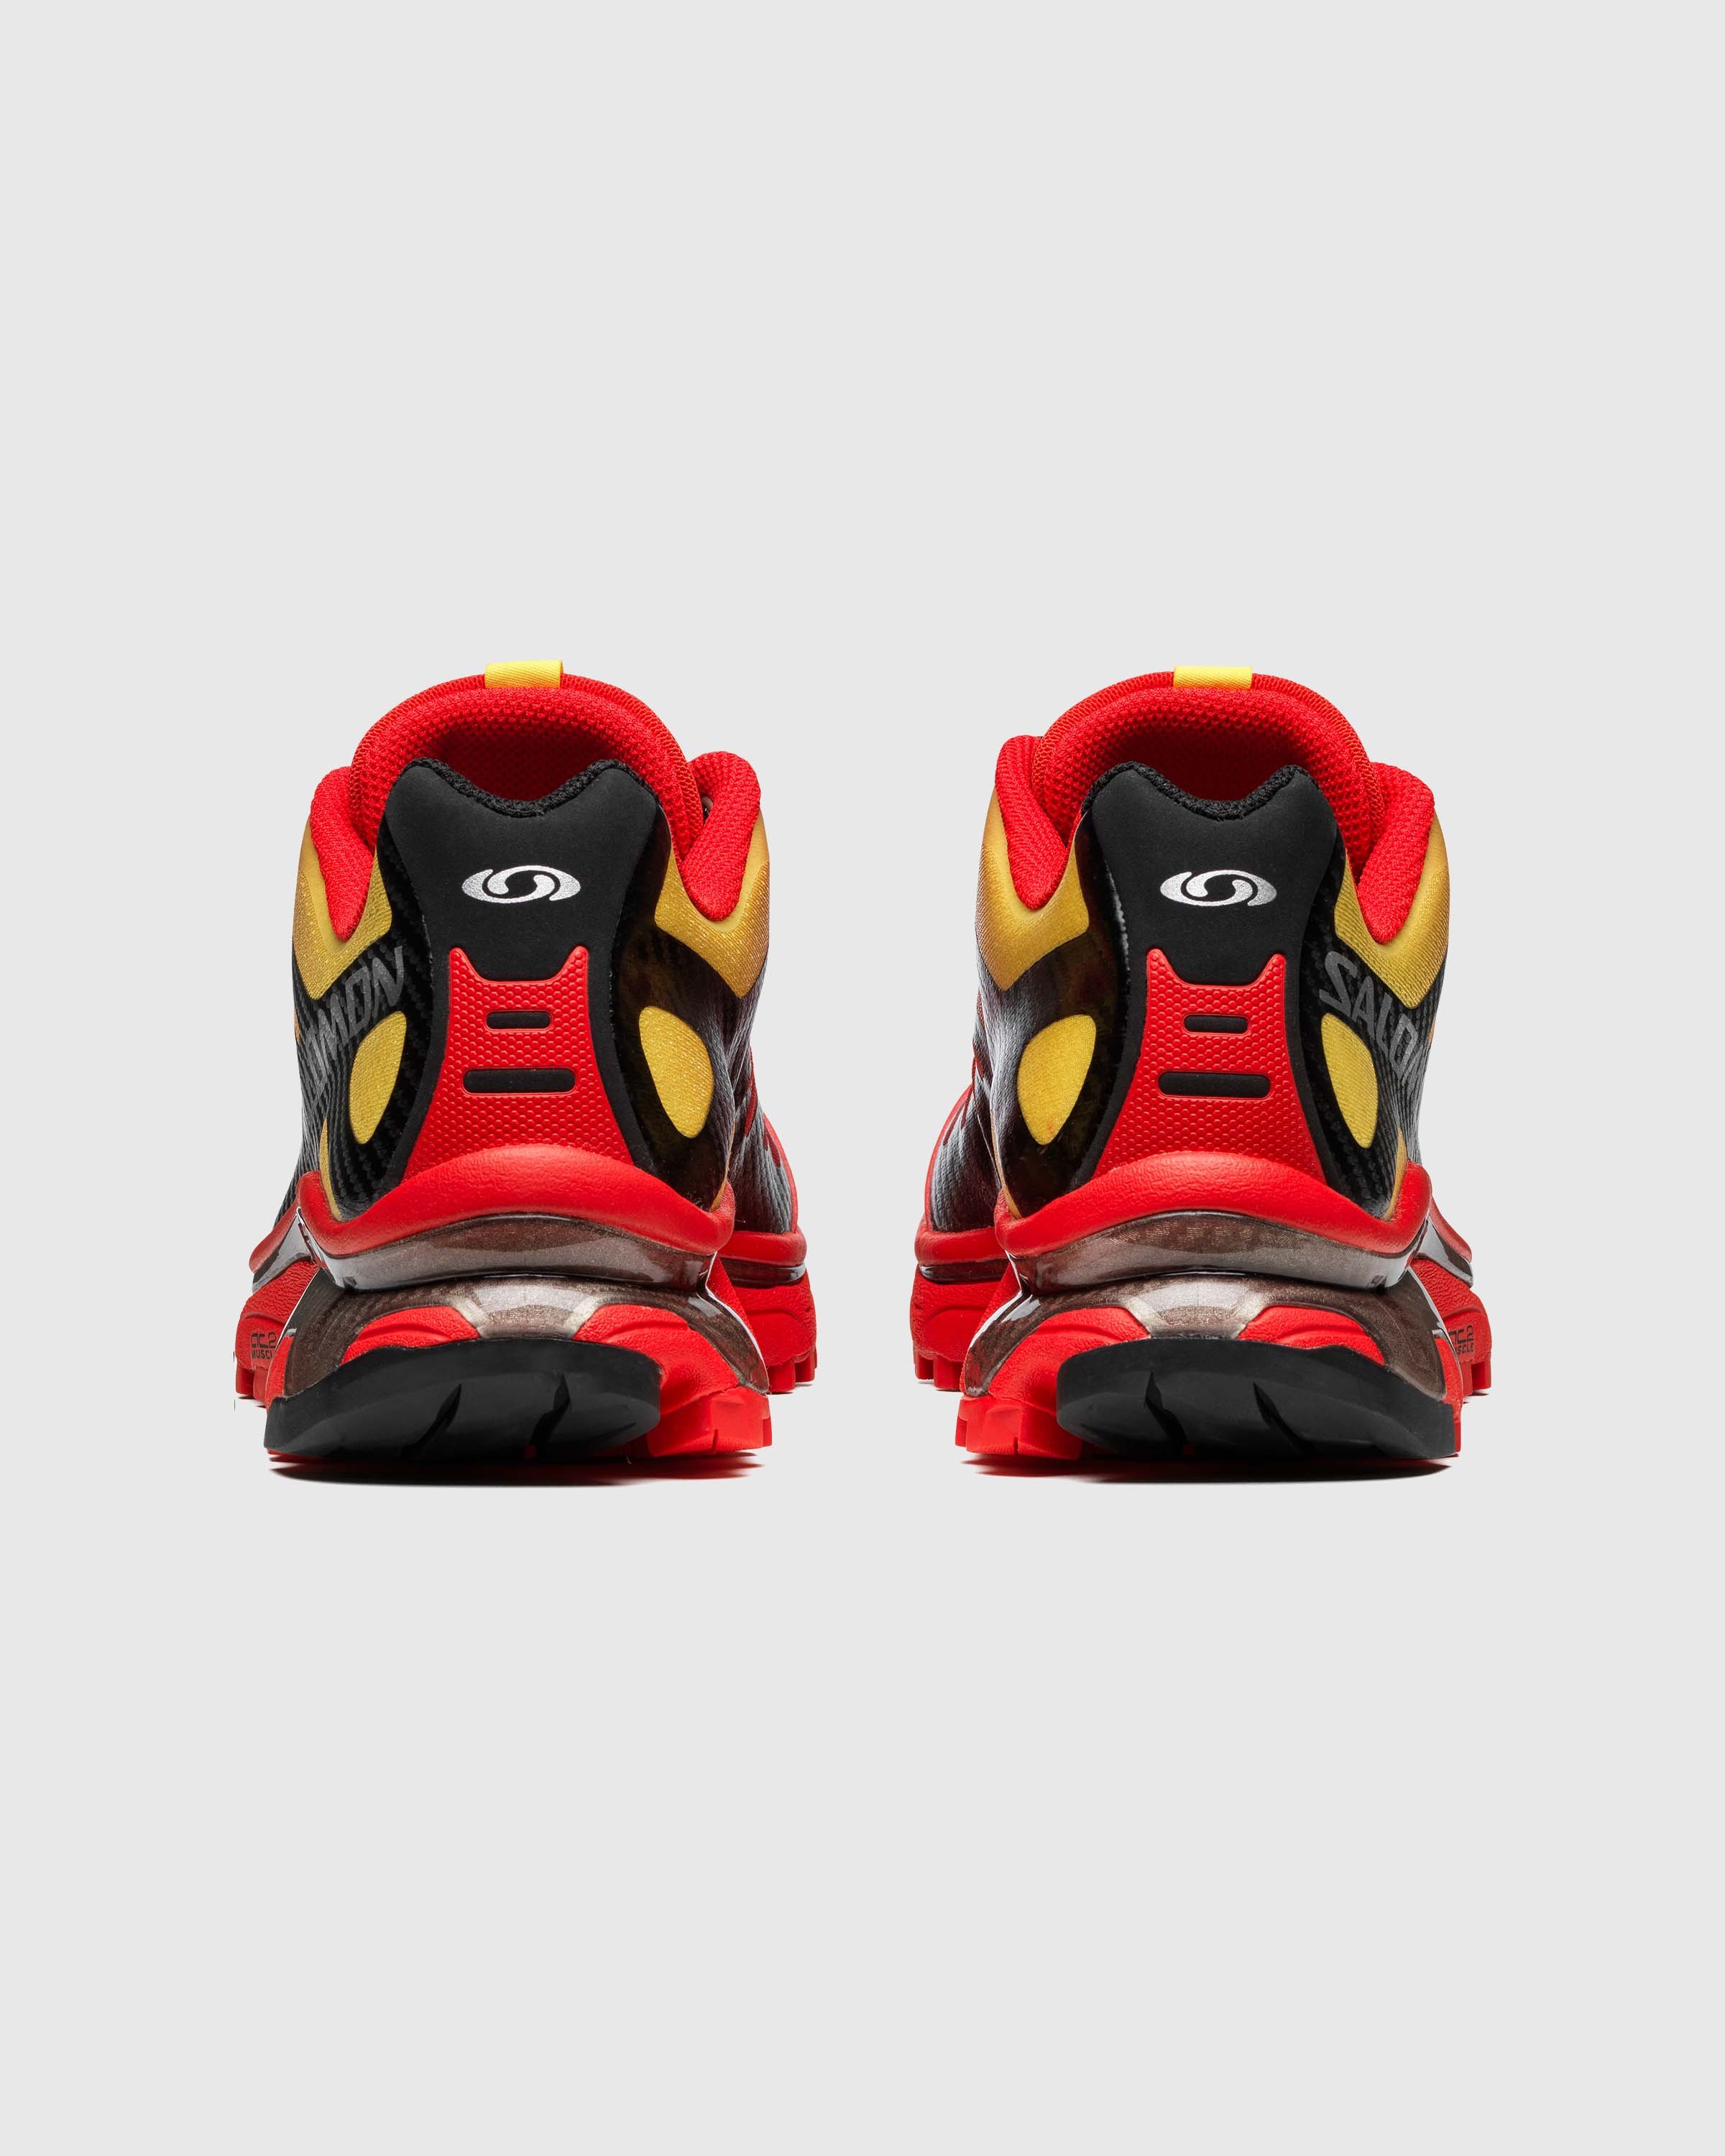 Salomon - XT-4 OG Fiery Red/Black/Yellow - Footwear - Red - Image 3